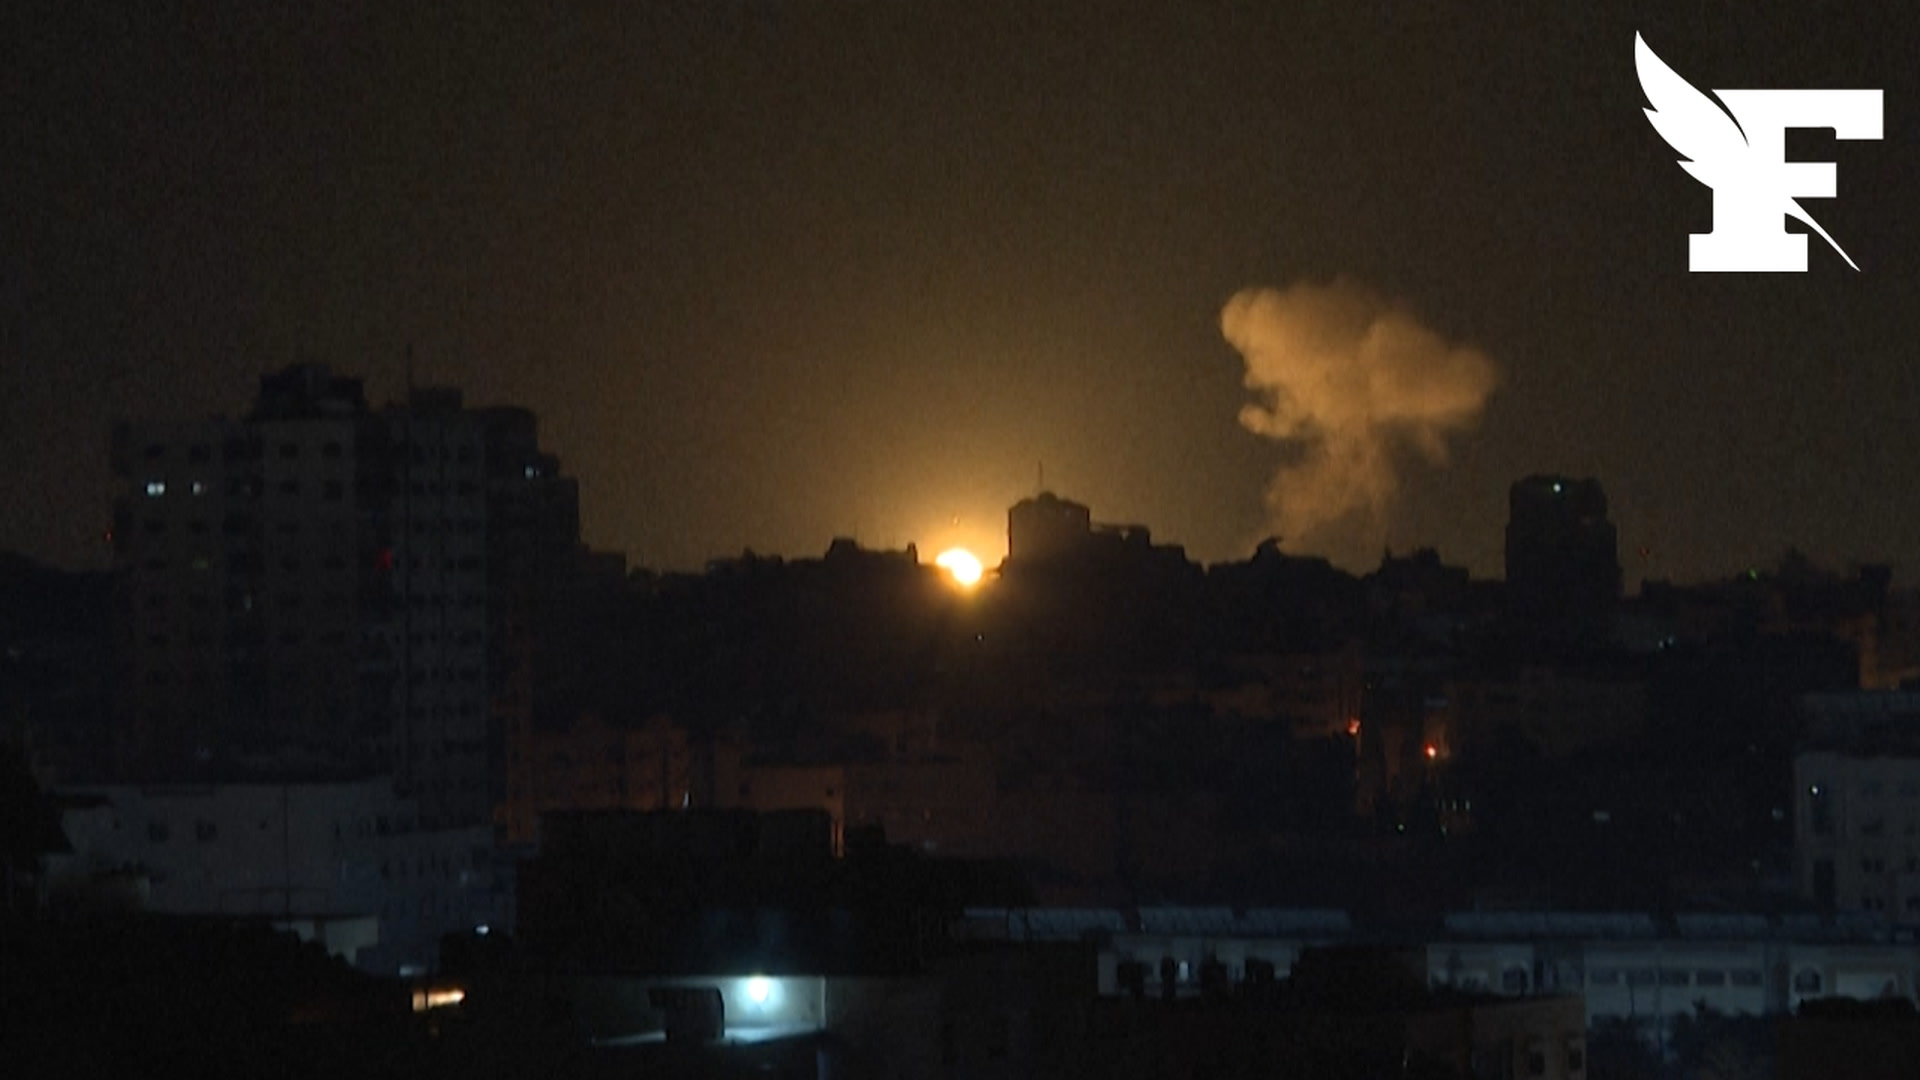 Des frappes éclatent entre Gaza et Israël après la mort de 10 Palestiniens